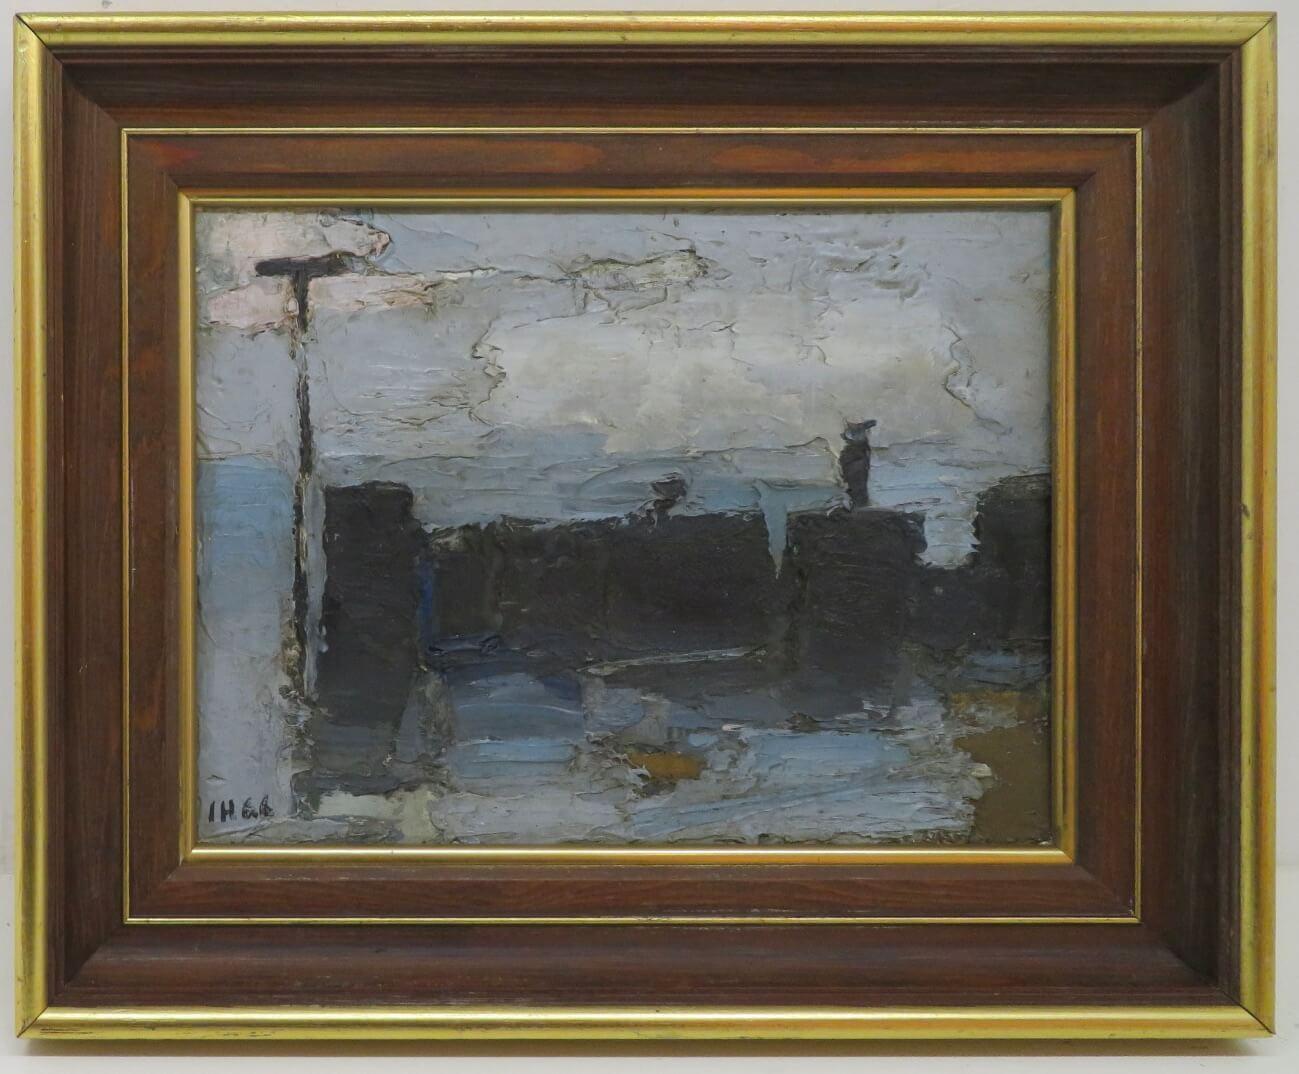 Landscape Painting Ian Hay - Peinture à l'huile post-impressionniste anglaise des années 1970, signée BEACH SCENE ESSEX